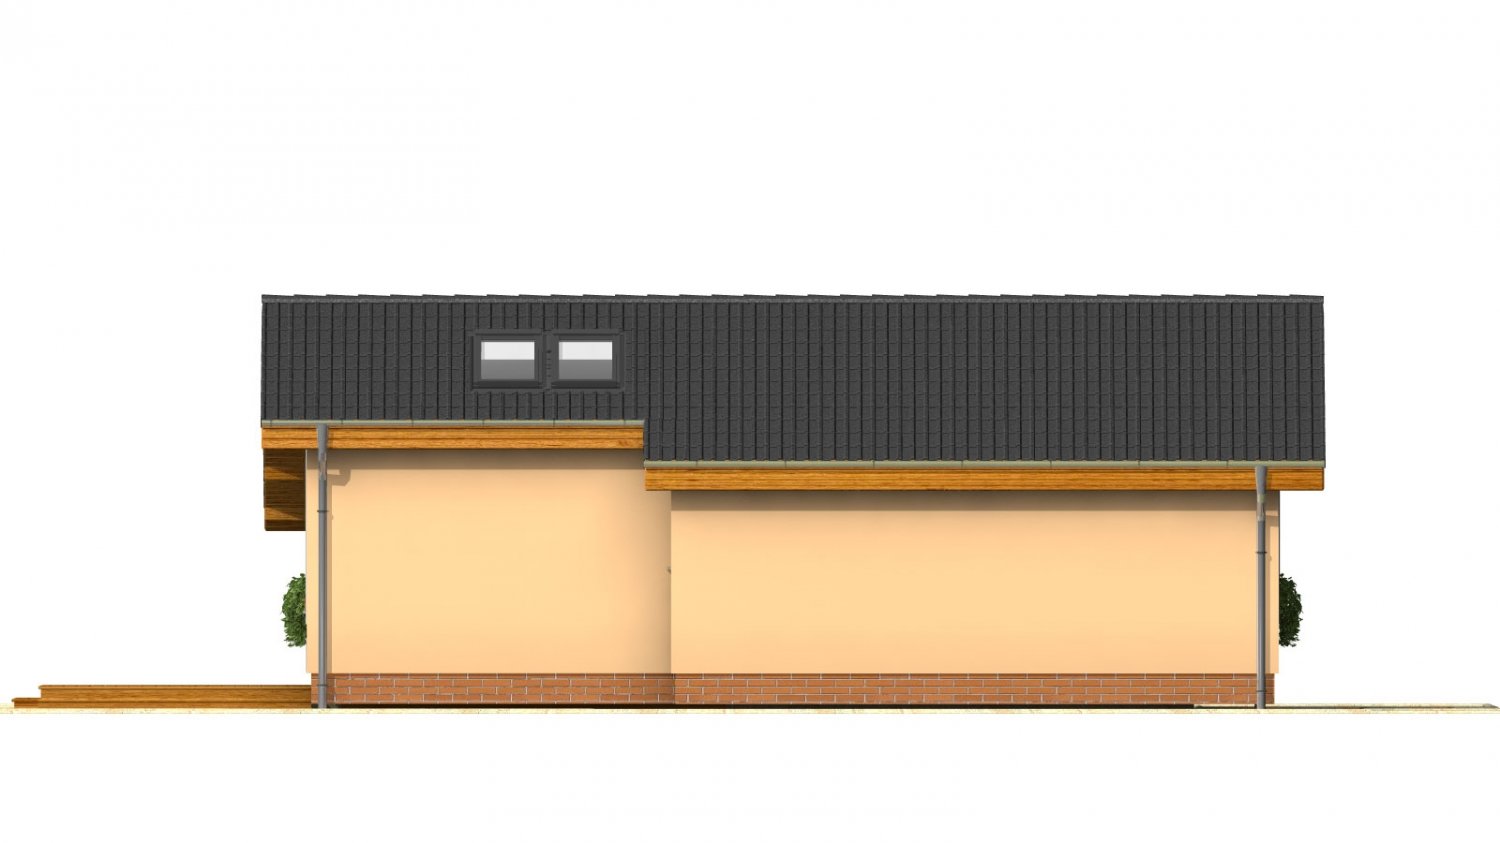 Zrkadlový pohľad 3. - Levný úzký dům na malý pozemek se sedlovou střechou, prosvětlený střešními okny. Efekt podkroví na přízemí.